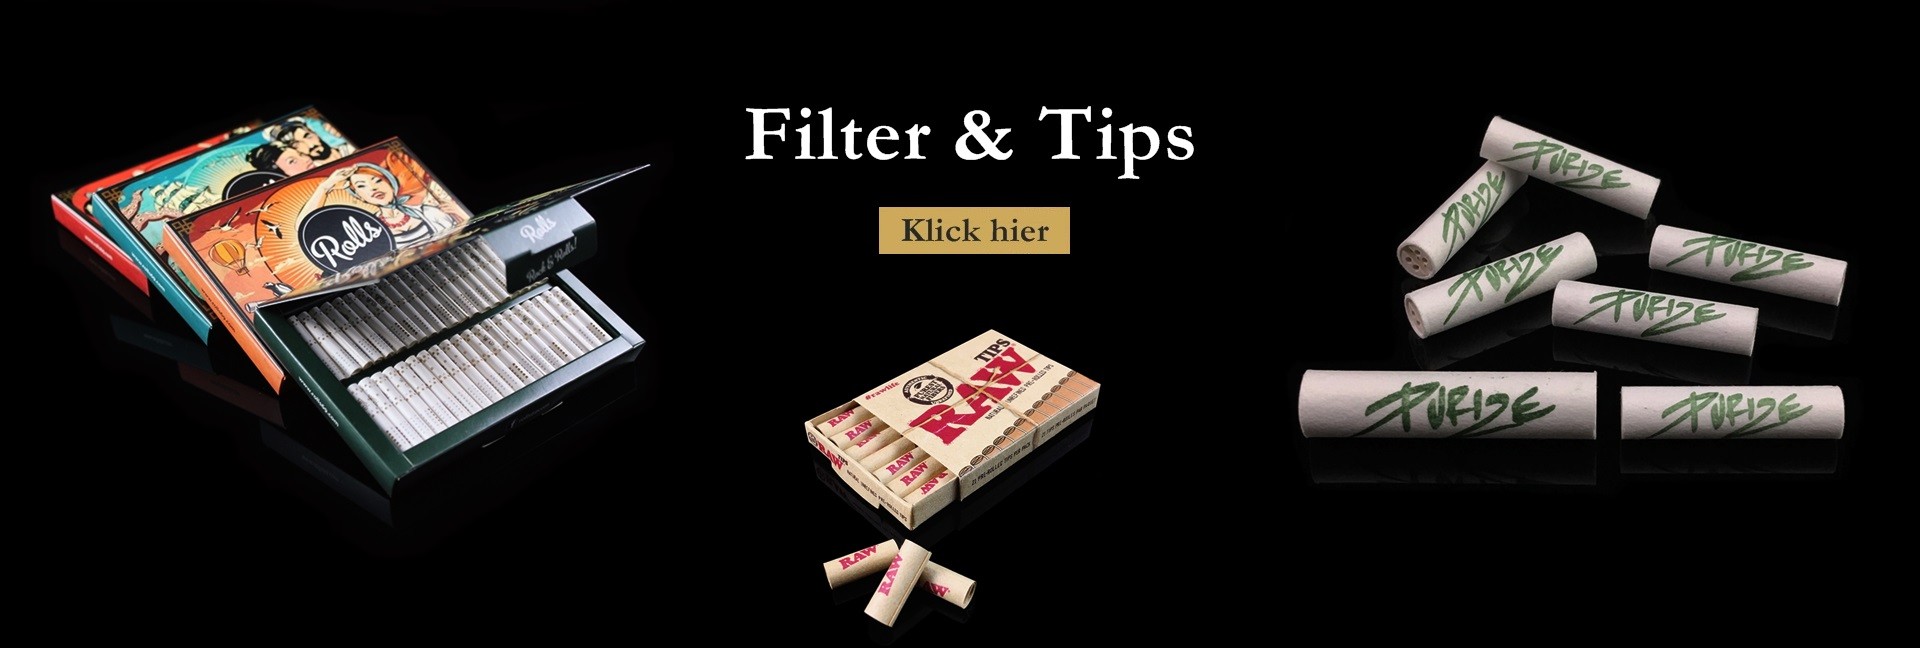 Filter & Tips